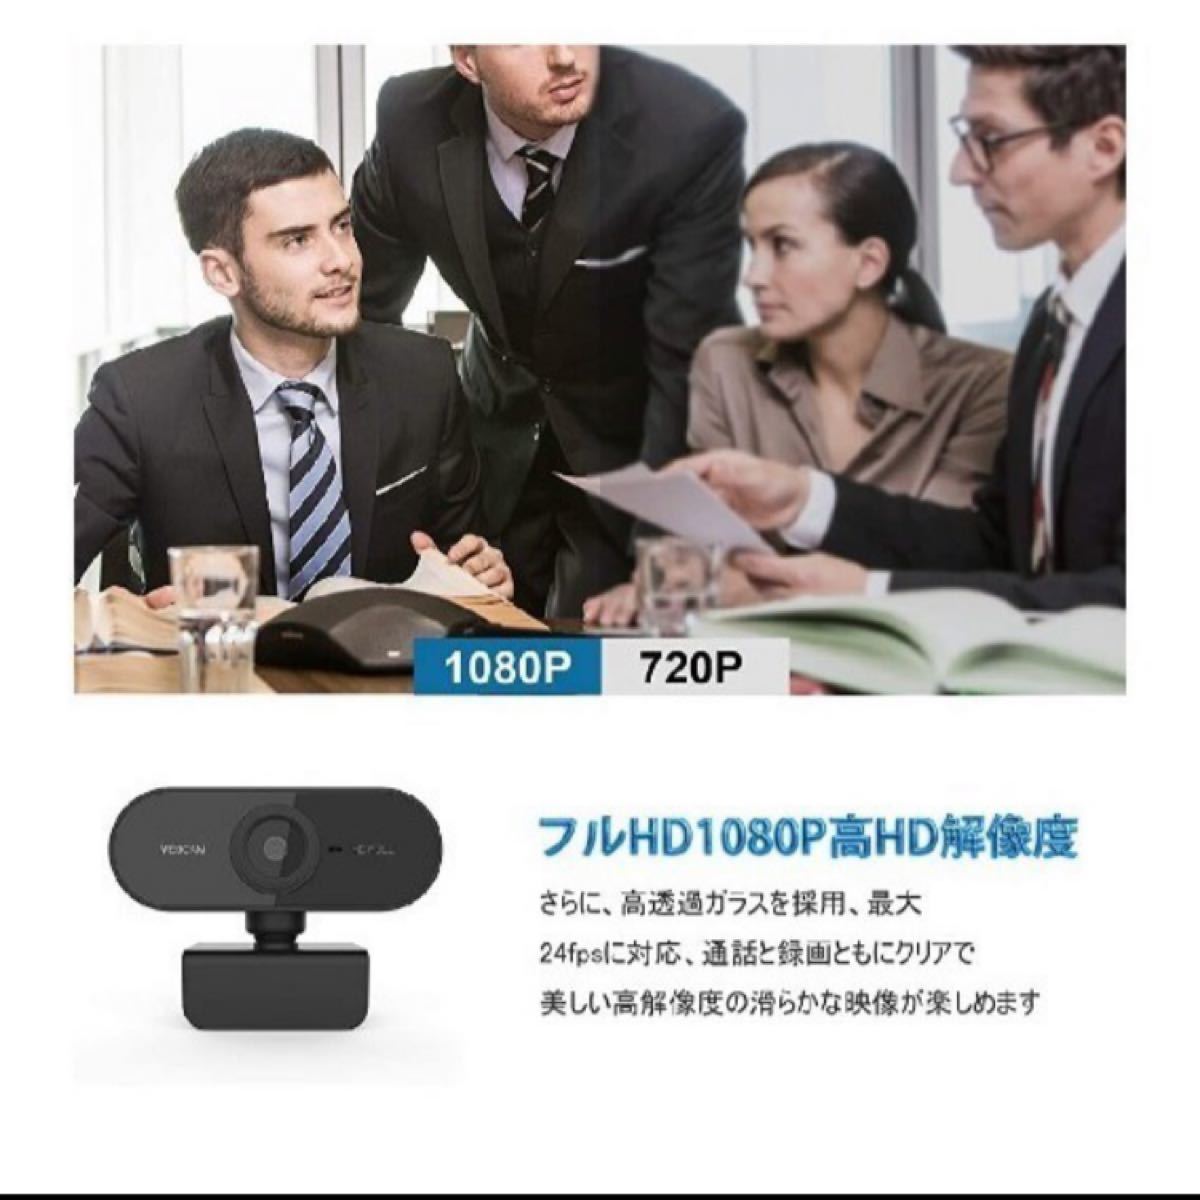 ウェブカメラ 1080p Full HD 24fps 高画質 オートフォーカス USBカメラ 内蔵マイク Webcam 会議用 